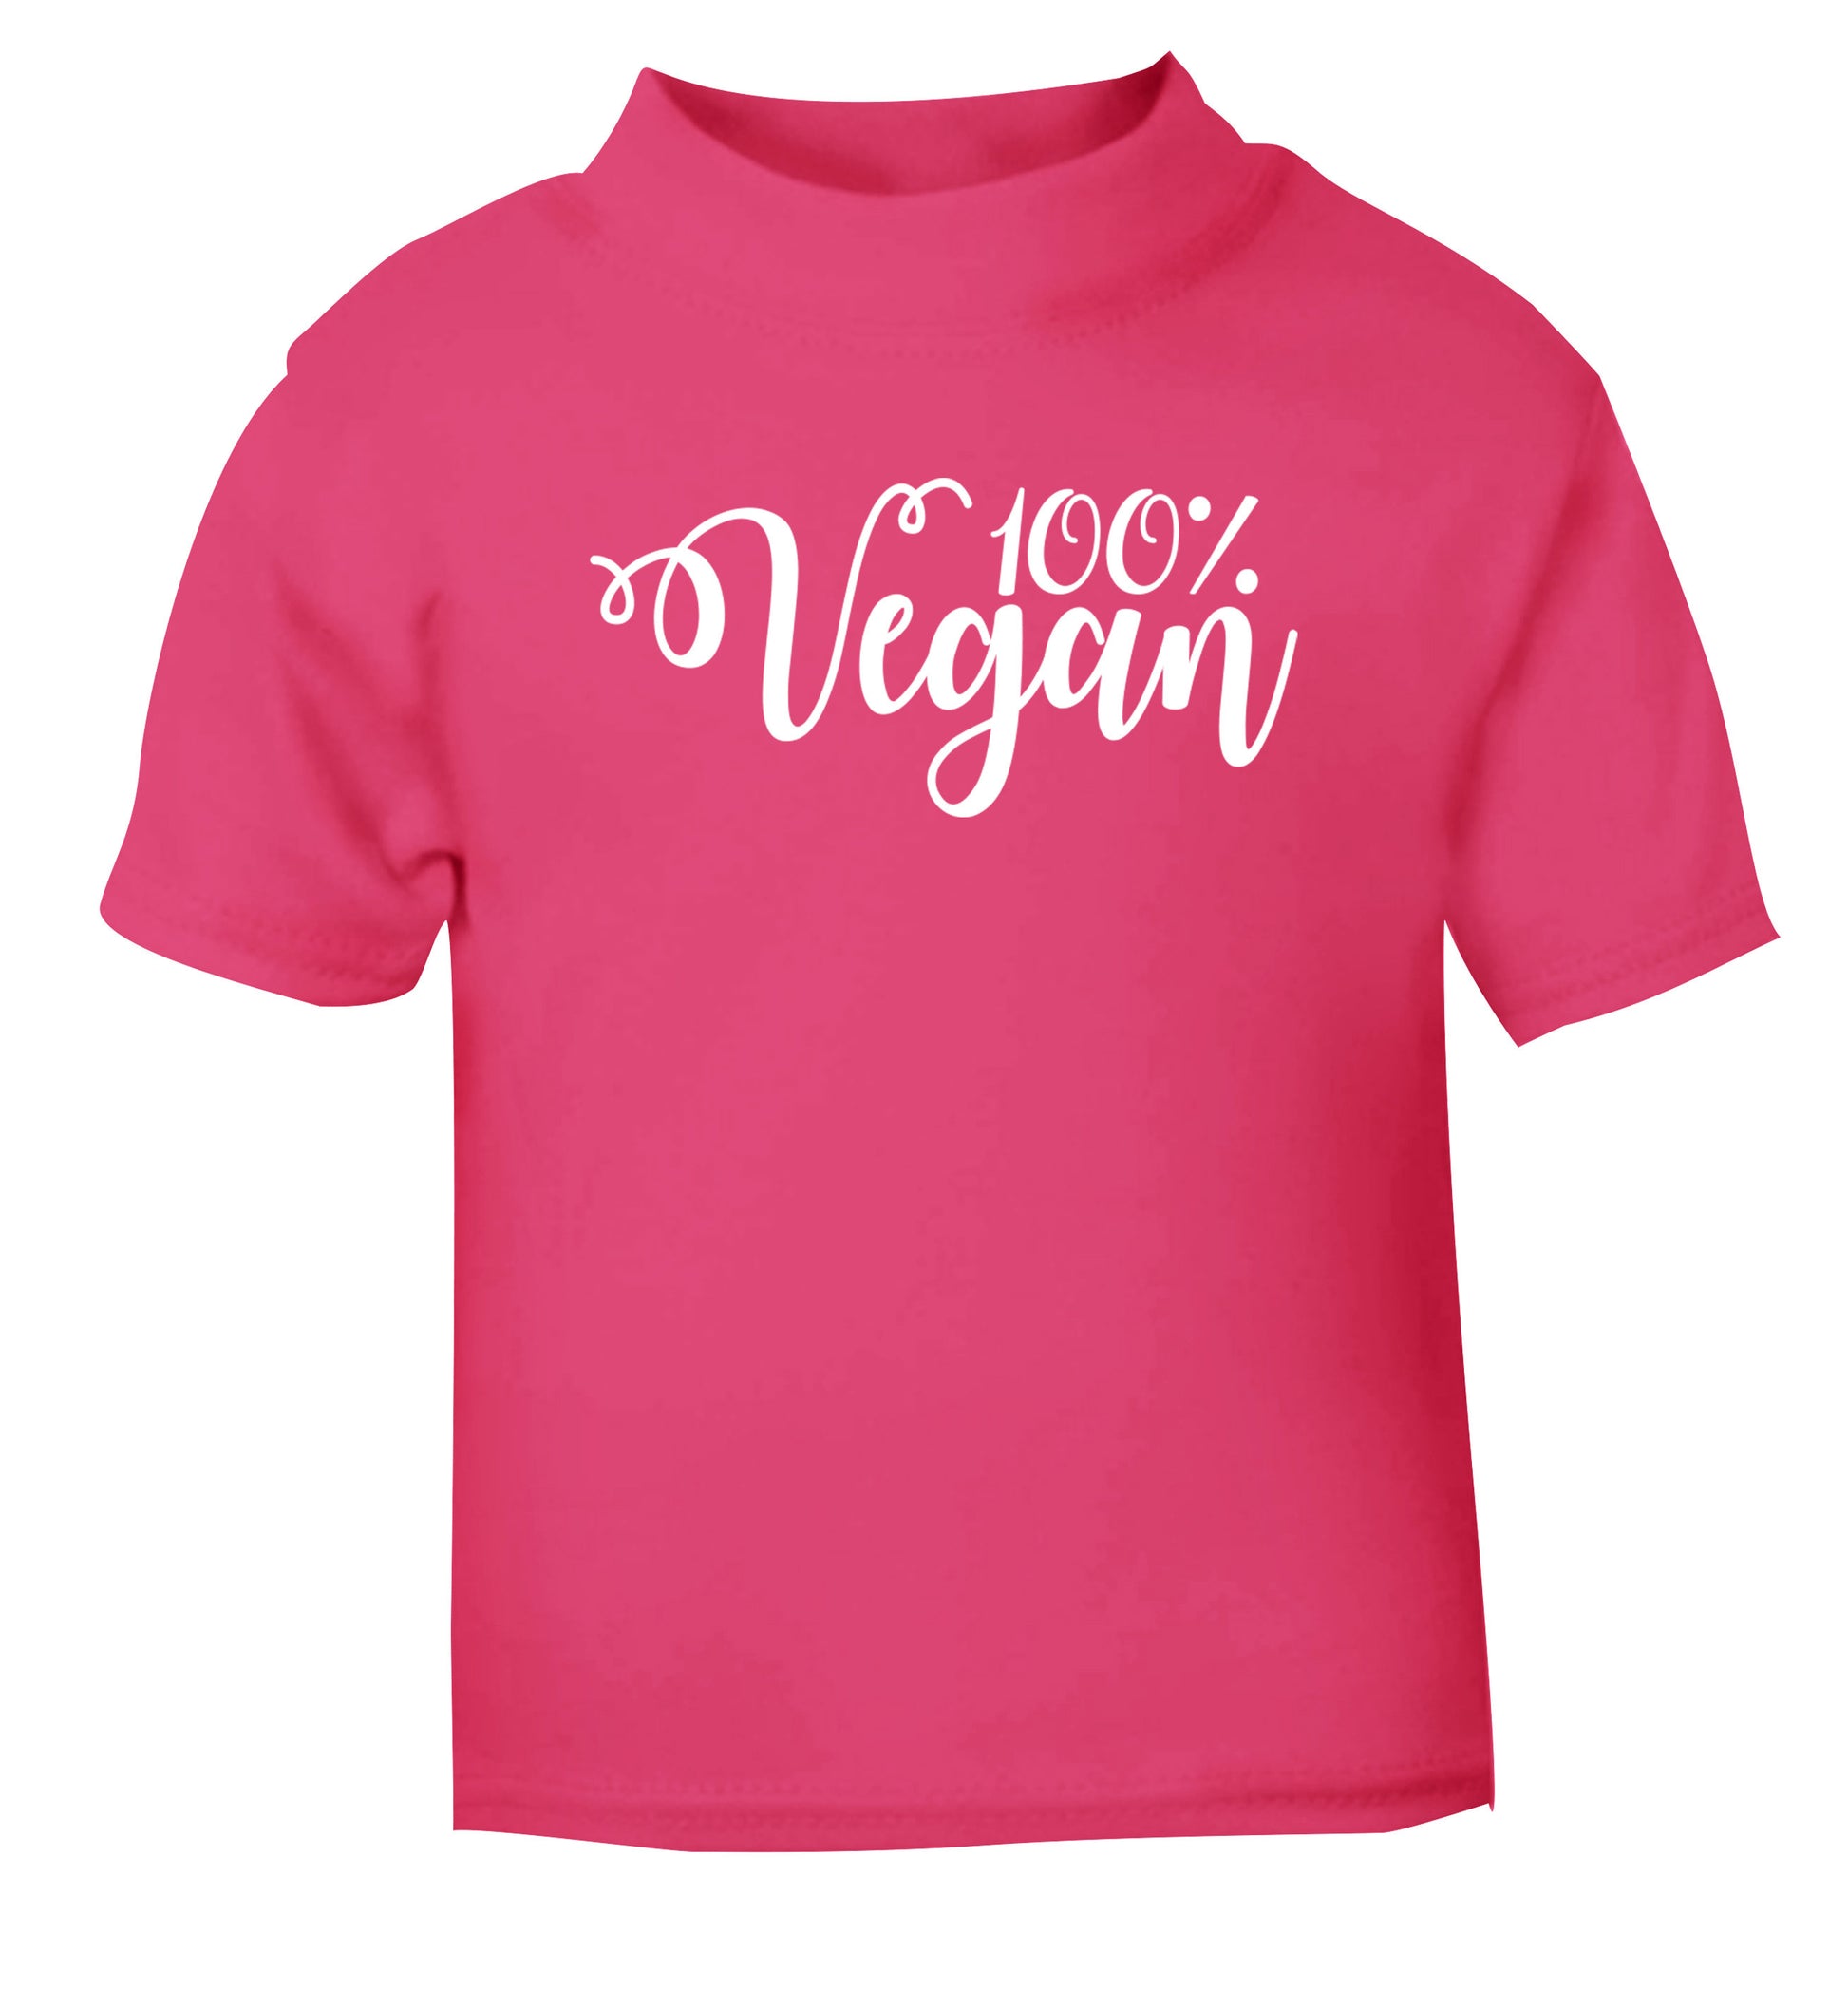 100% Vegan pink Baby Toddler Tshirt 2 Years